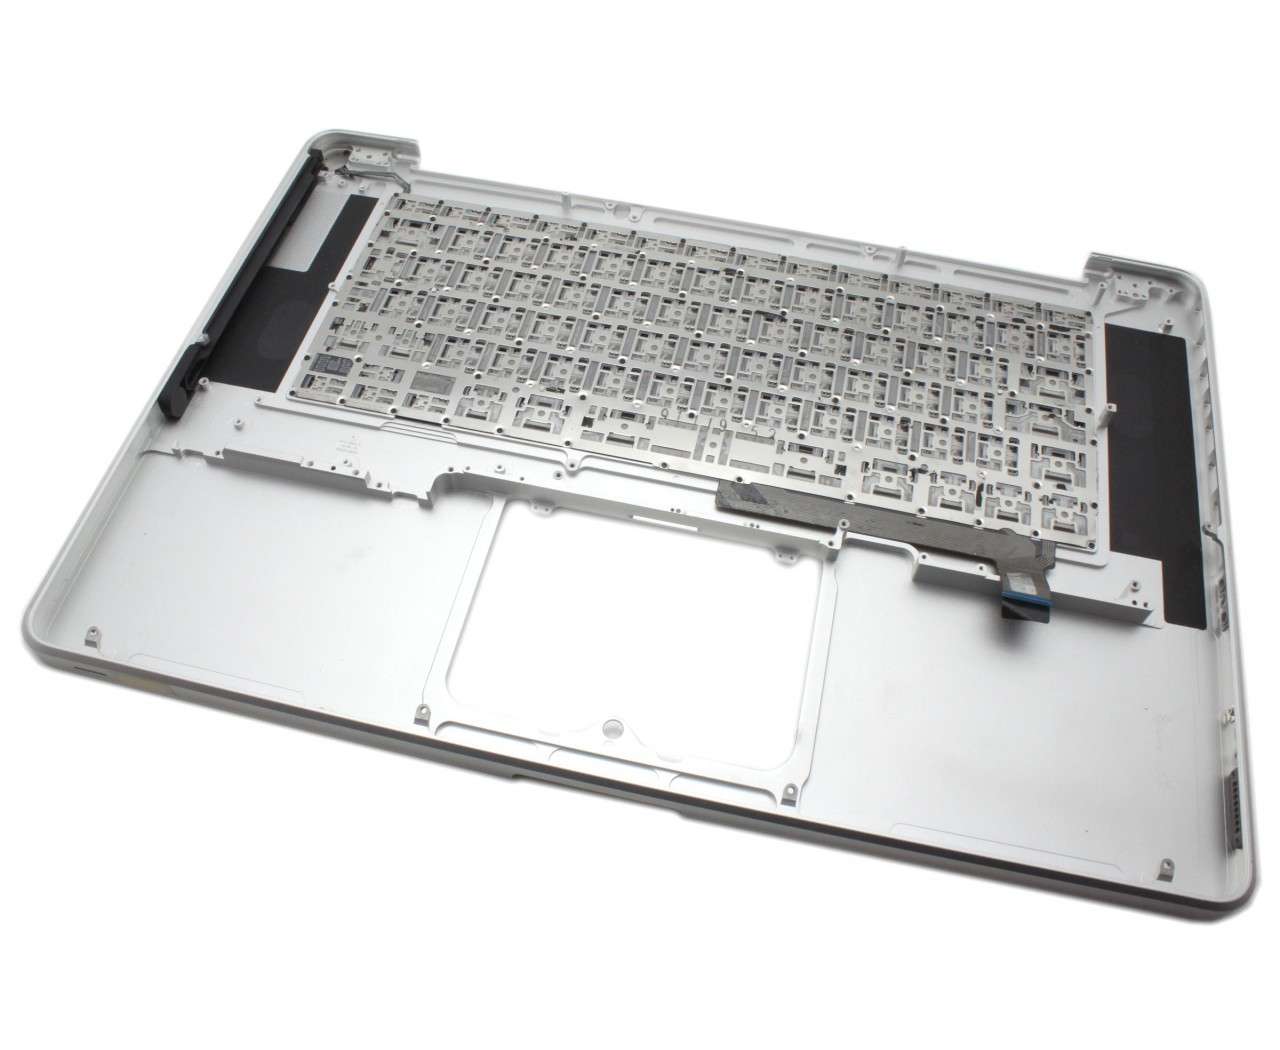 Tastatura Apple MacBook Pro 15 MB985 Neagra cu Palmrest Argintiu Refurbished Apple Apple